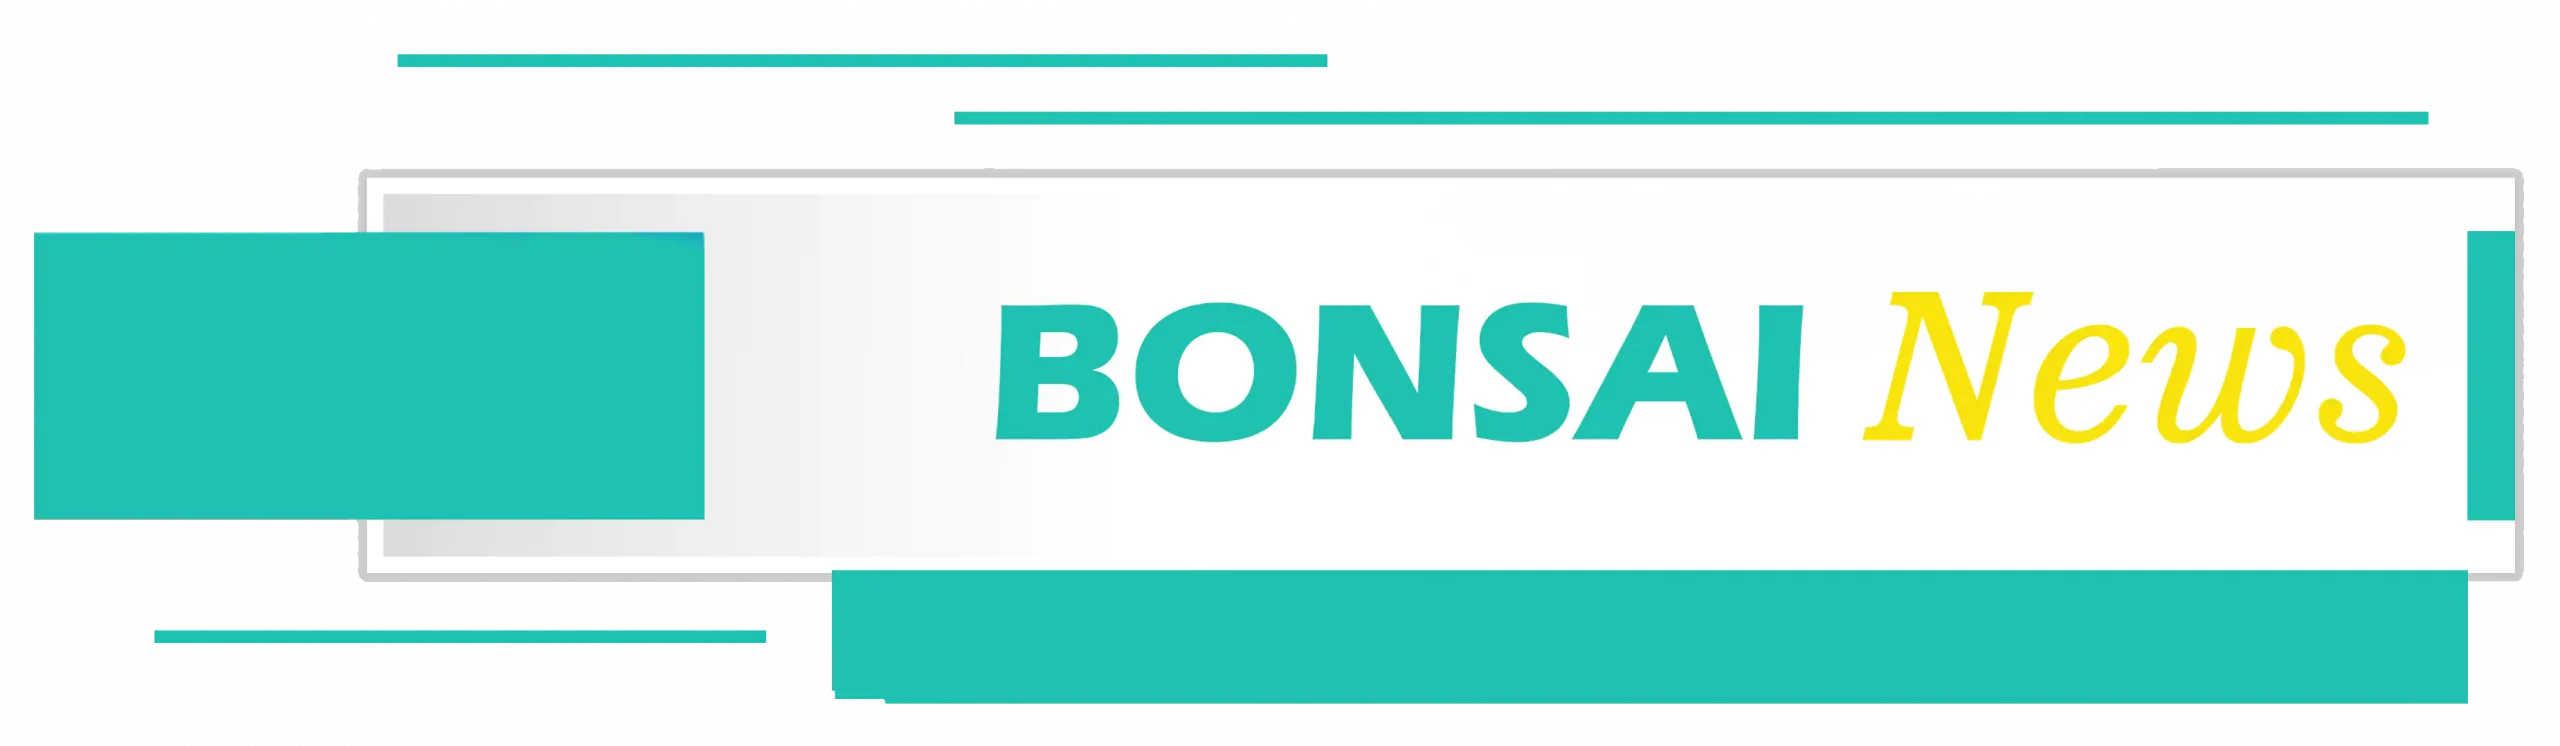 Bonsai news title